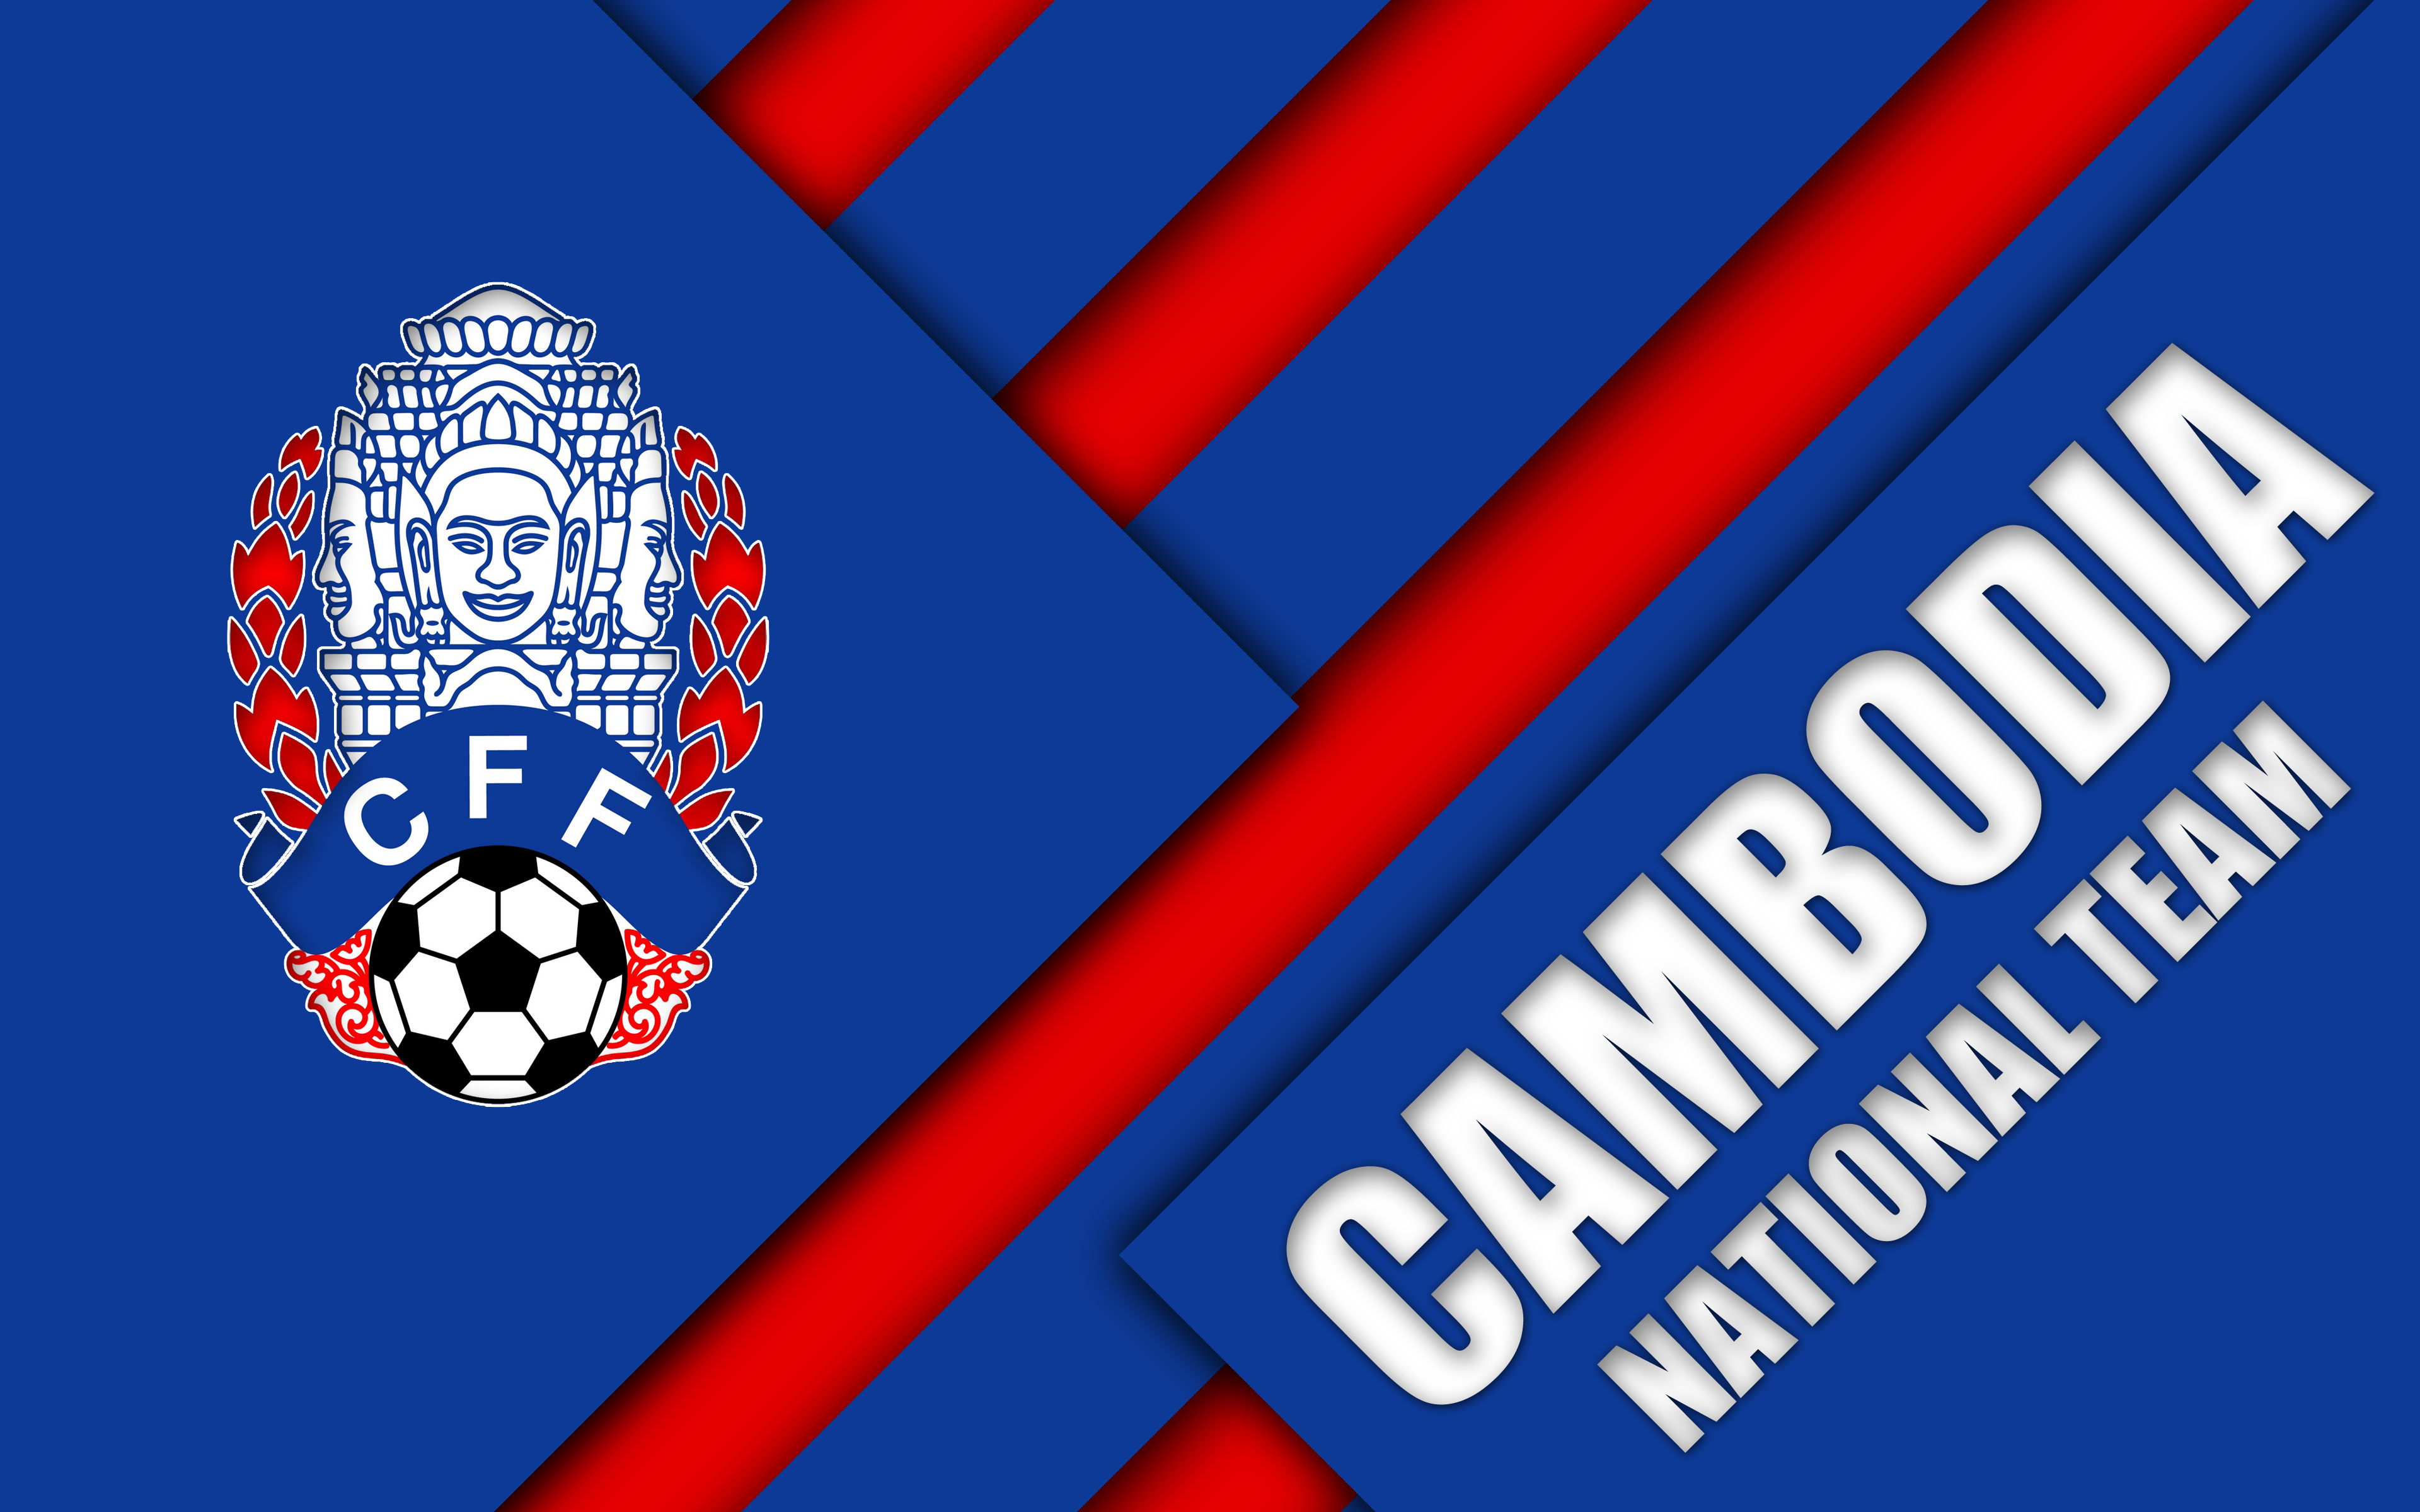 cambodia, sports, cambodia national football team, emblem, logo, soccer